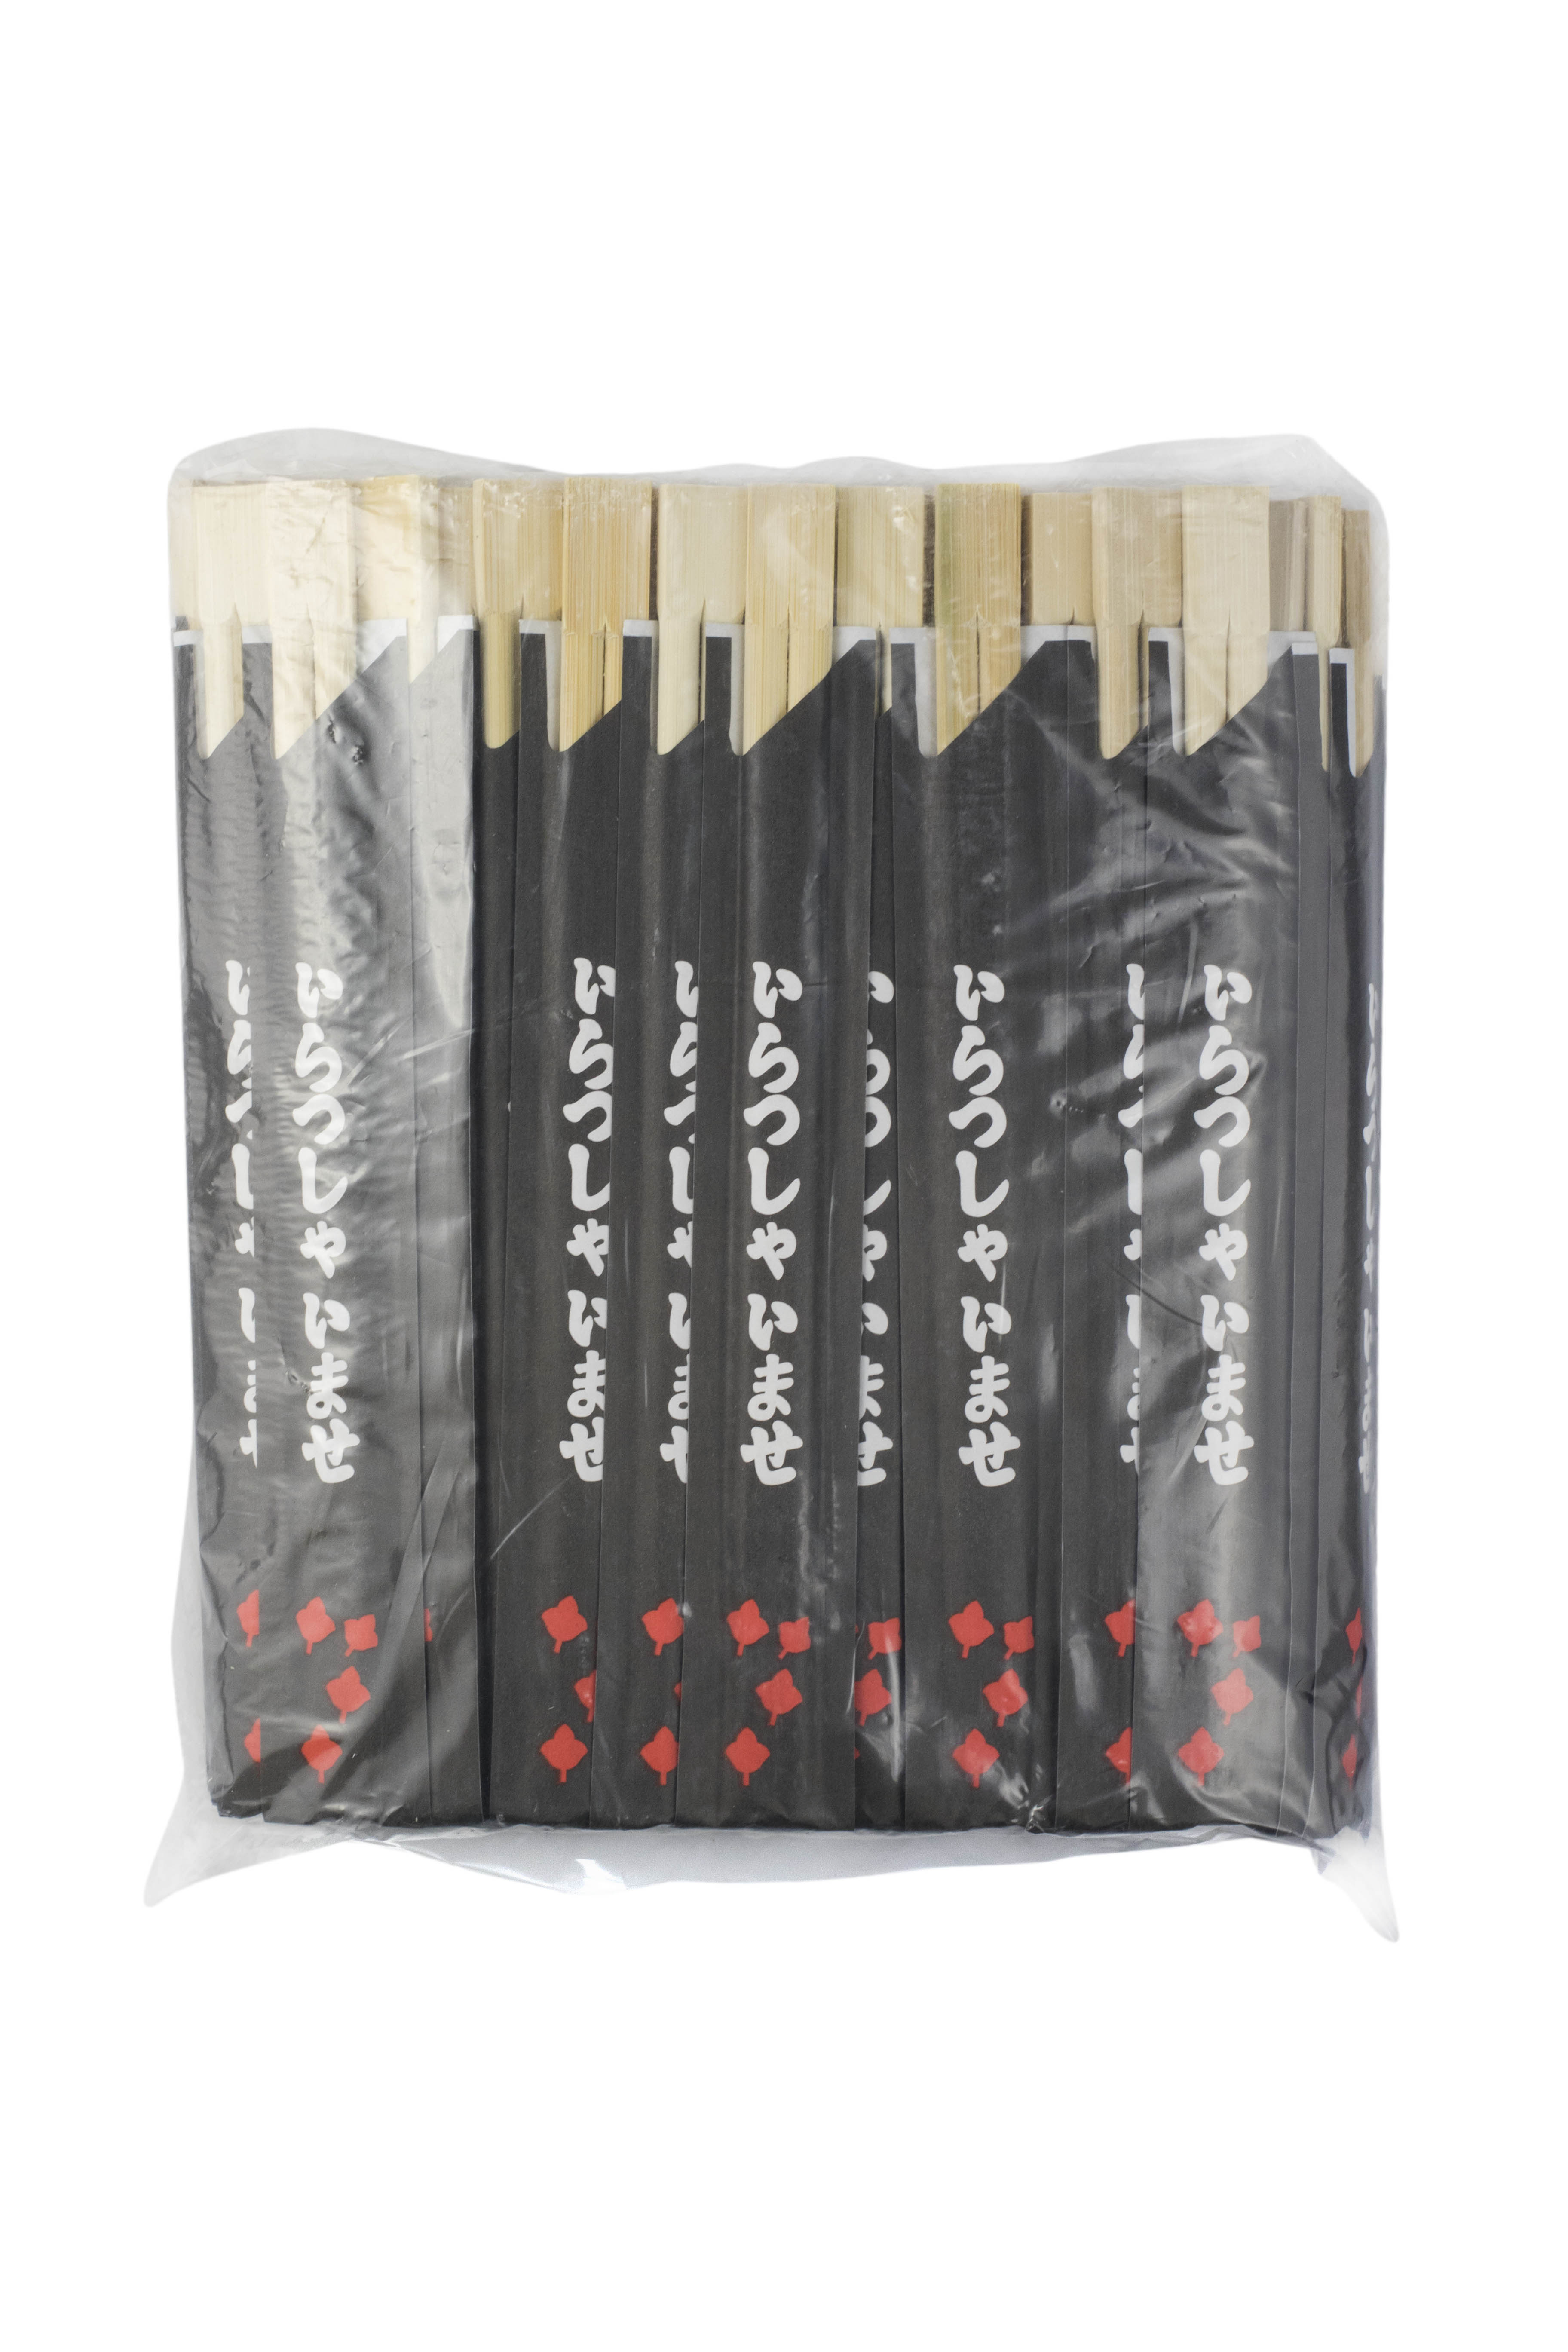 Betisoare din bambus pentru sushi premium, 100 bucati/pachet, cu ambalaj din hârtie negru